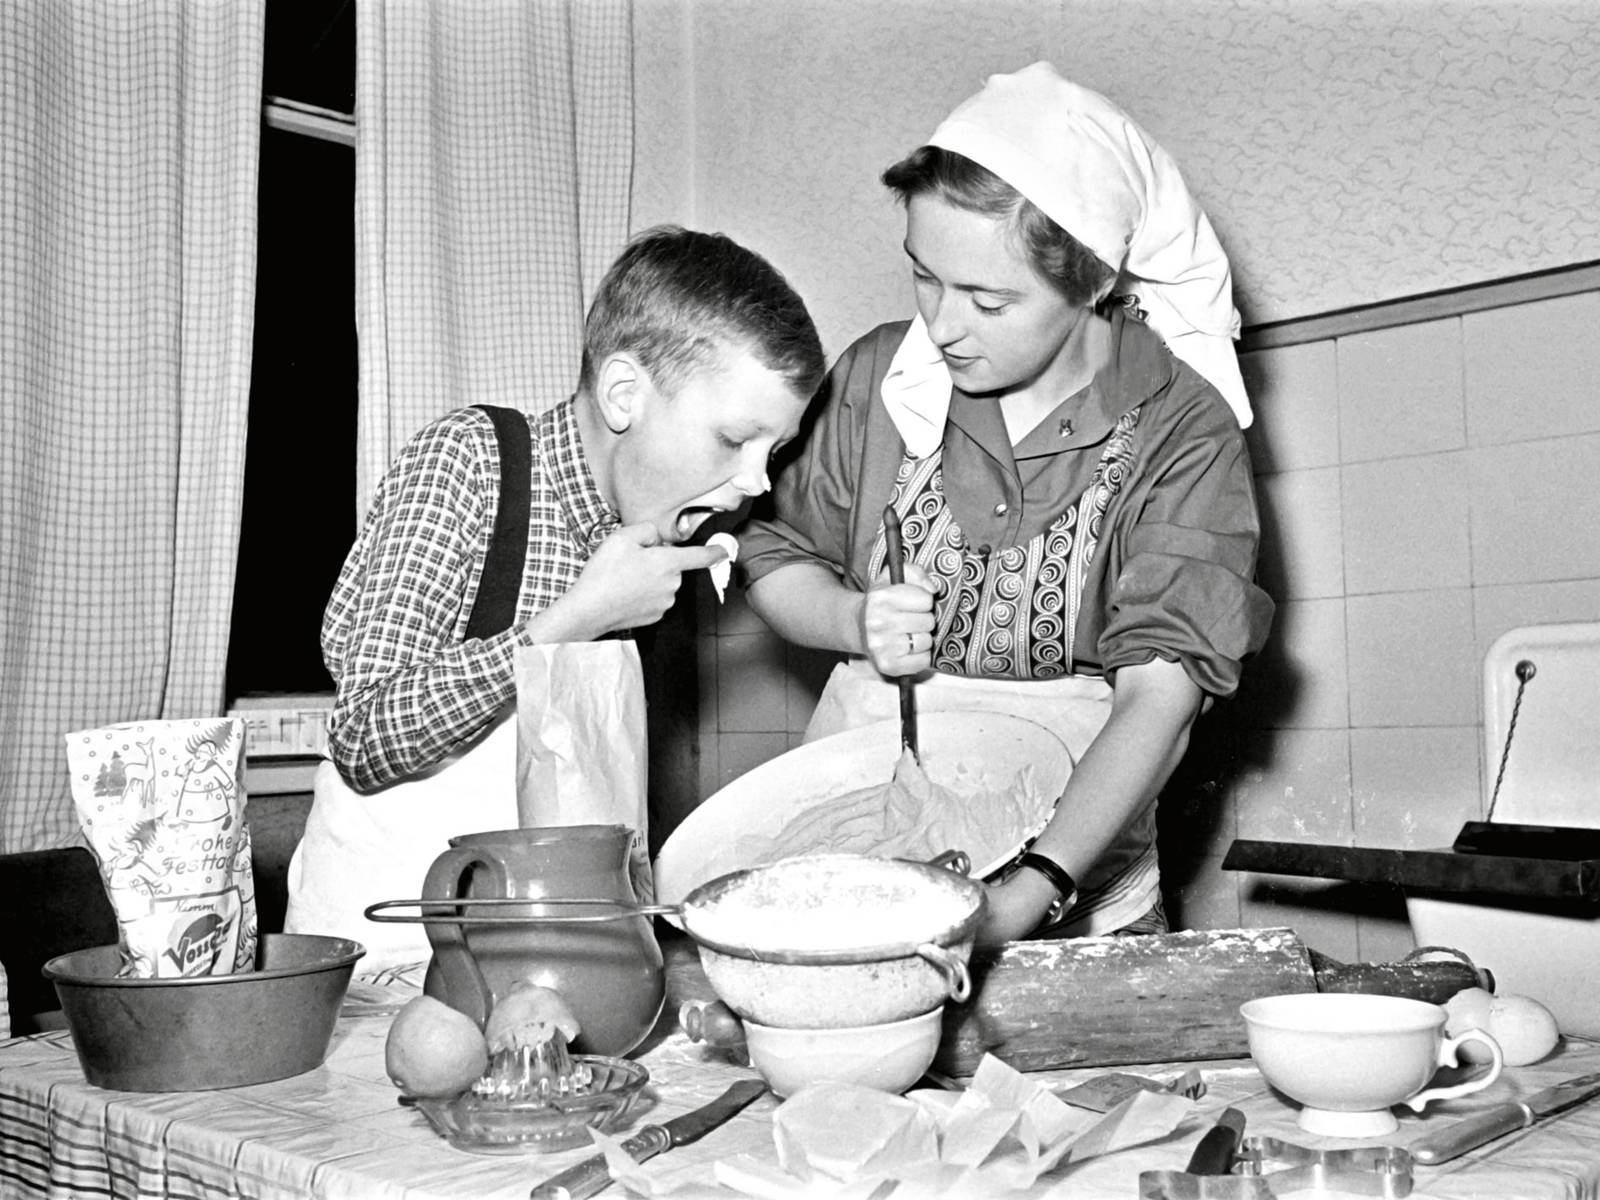 Schwarz-Weiß-Fotografie: Eine Frau trägt Kopftuch und Schürze und rührt mit der Hand einen Kuchenteig. Neben ihr ist ein Junge, der mit dem Finger Teig probiert, der Junge hat auch Kuchenteig an der Nasenspitze.